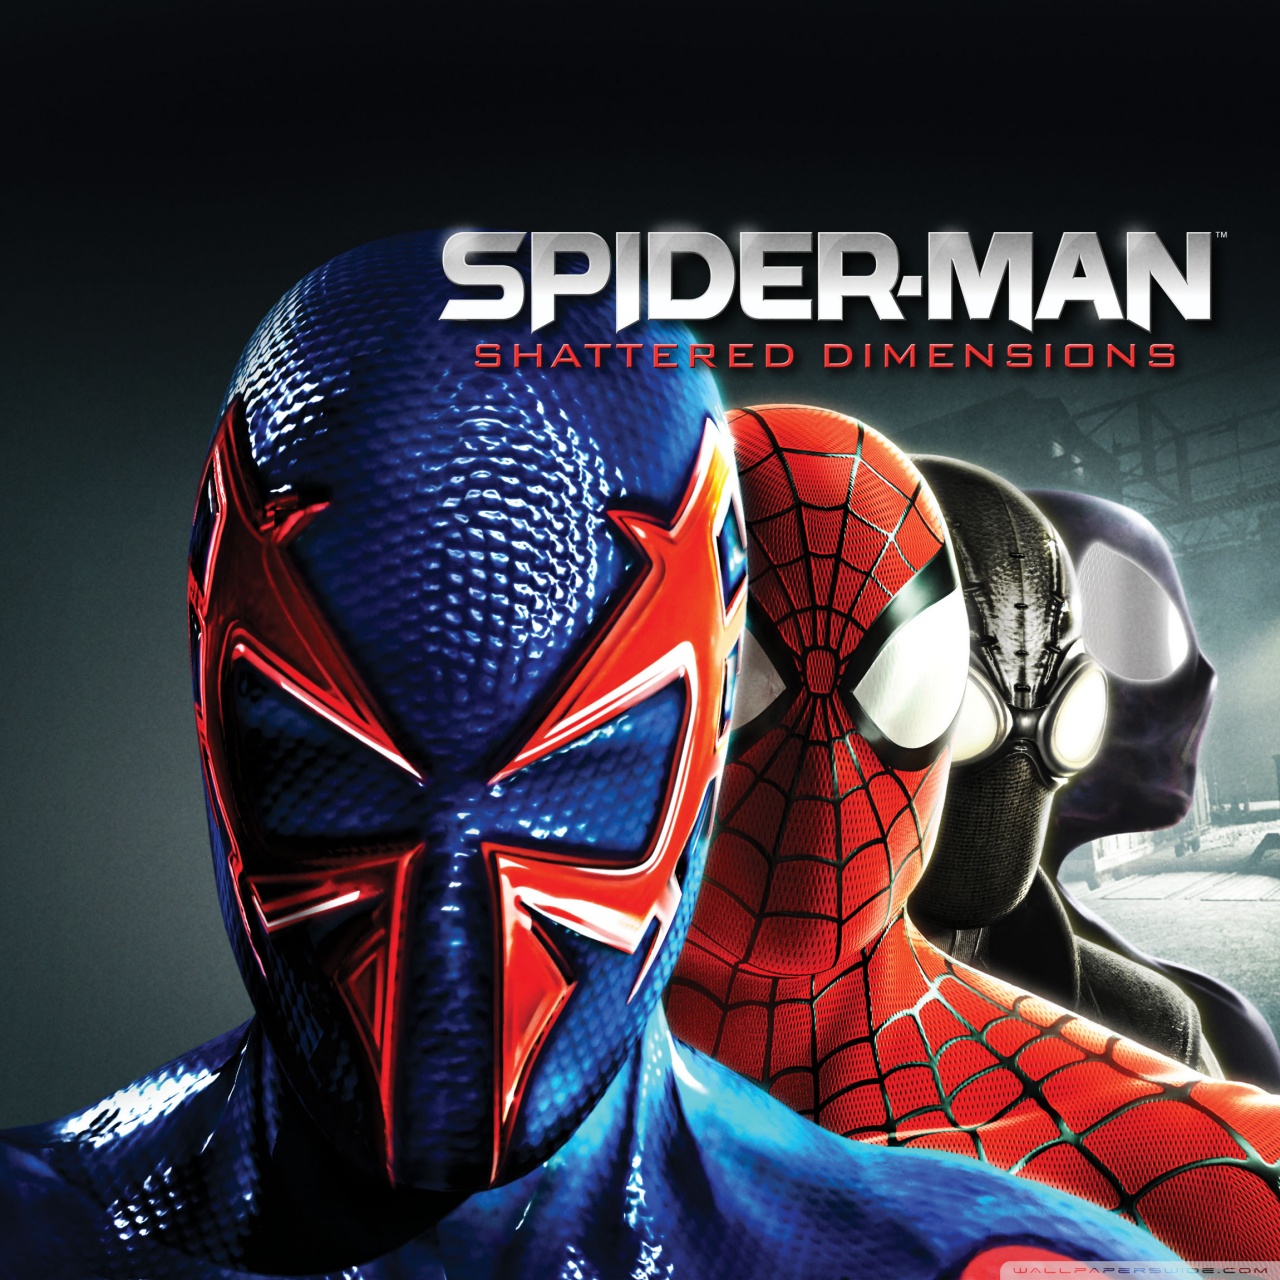 Spider-Man Shattered Dimensions HD desktop wallpaper : Widescreen ...